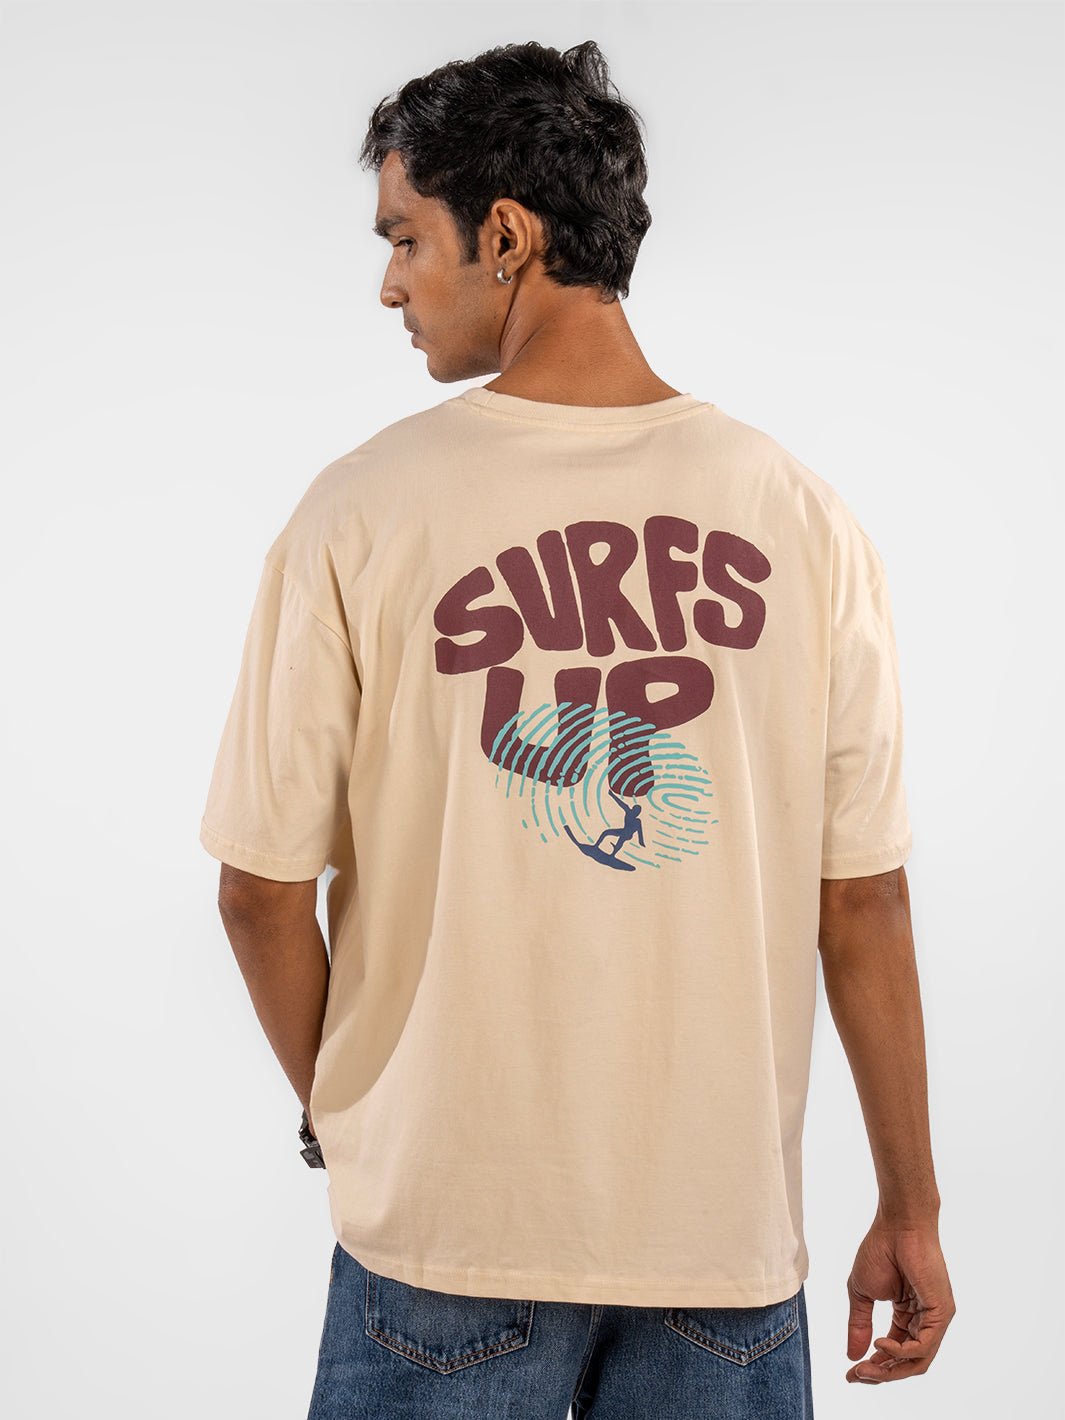 Surfs up Eszett t-shirt view back 